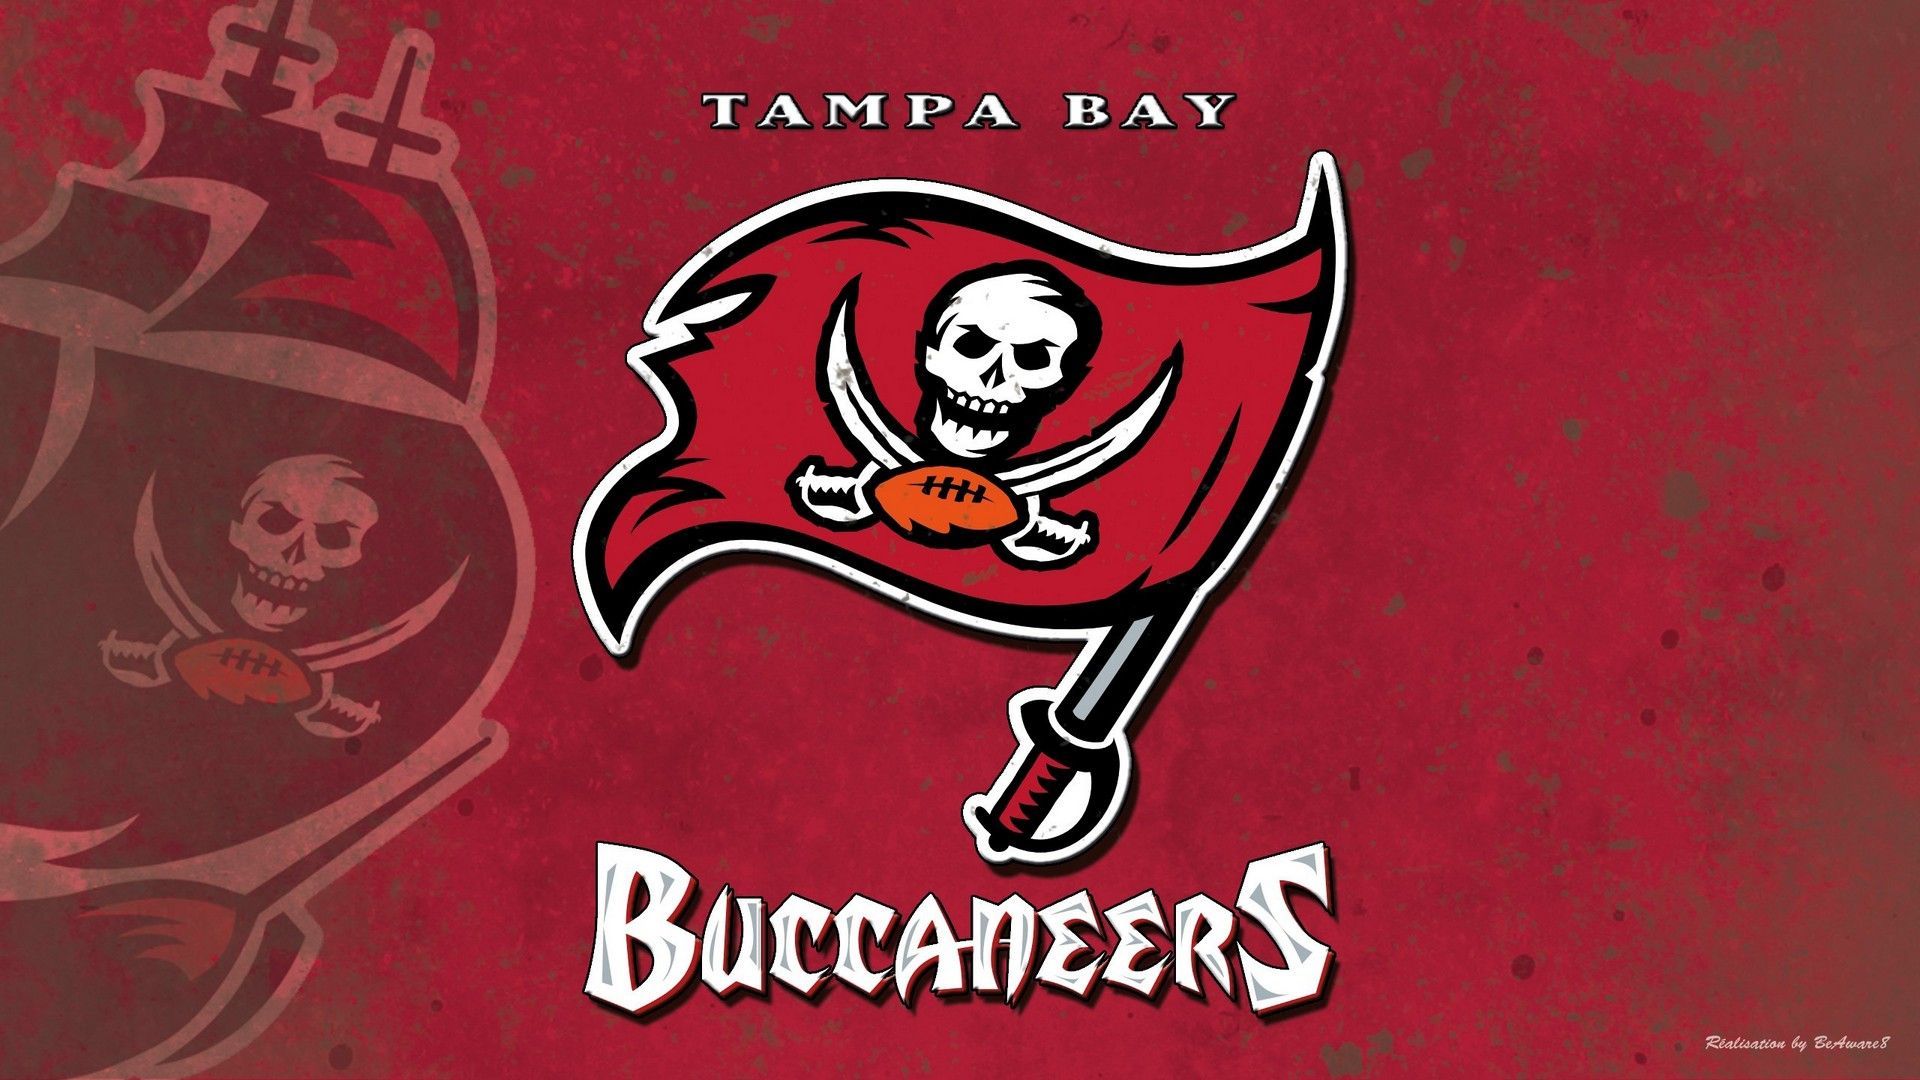 Tampa Bay Buccaneers 2021 Wallpapers Wallpaper Cave